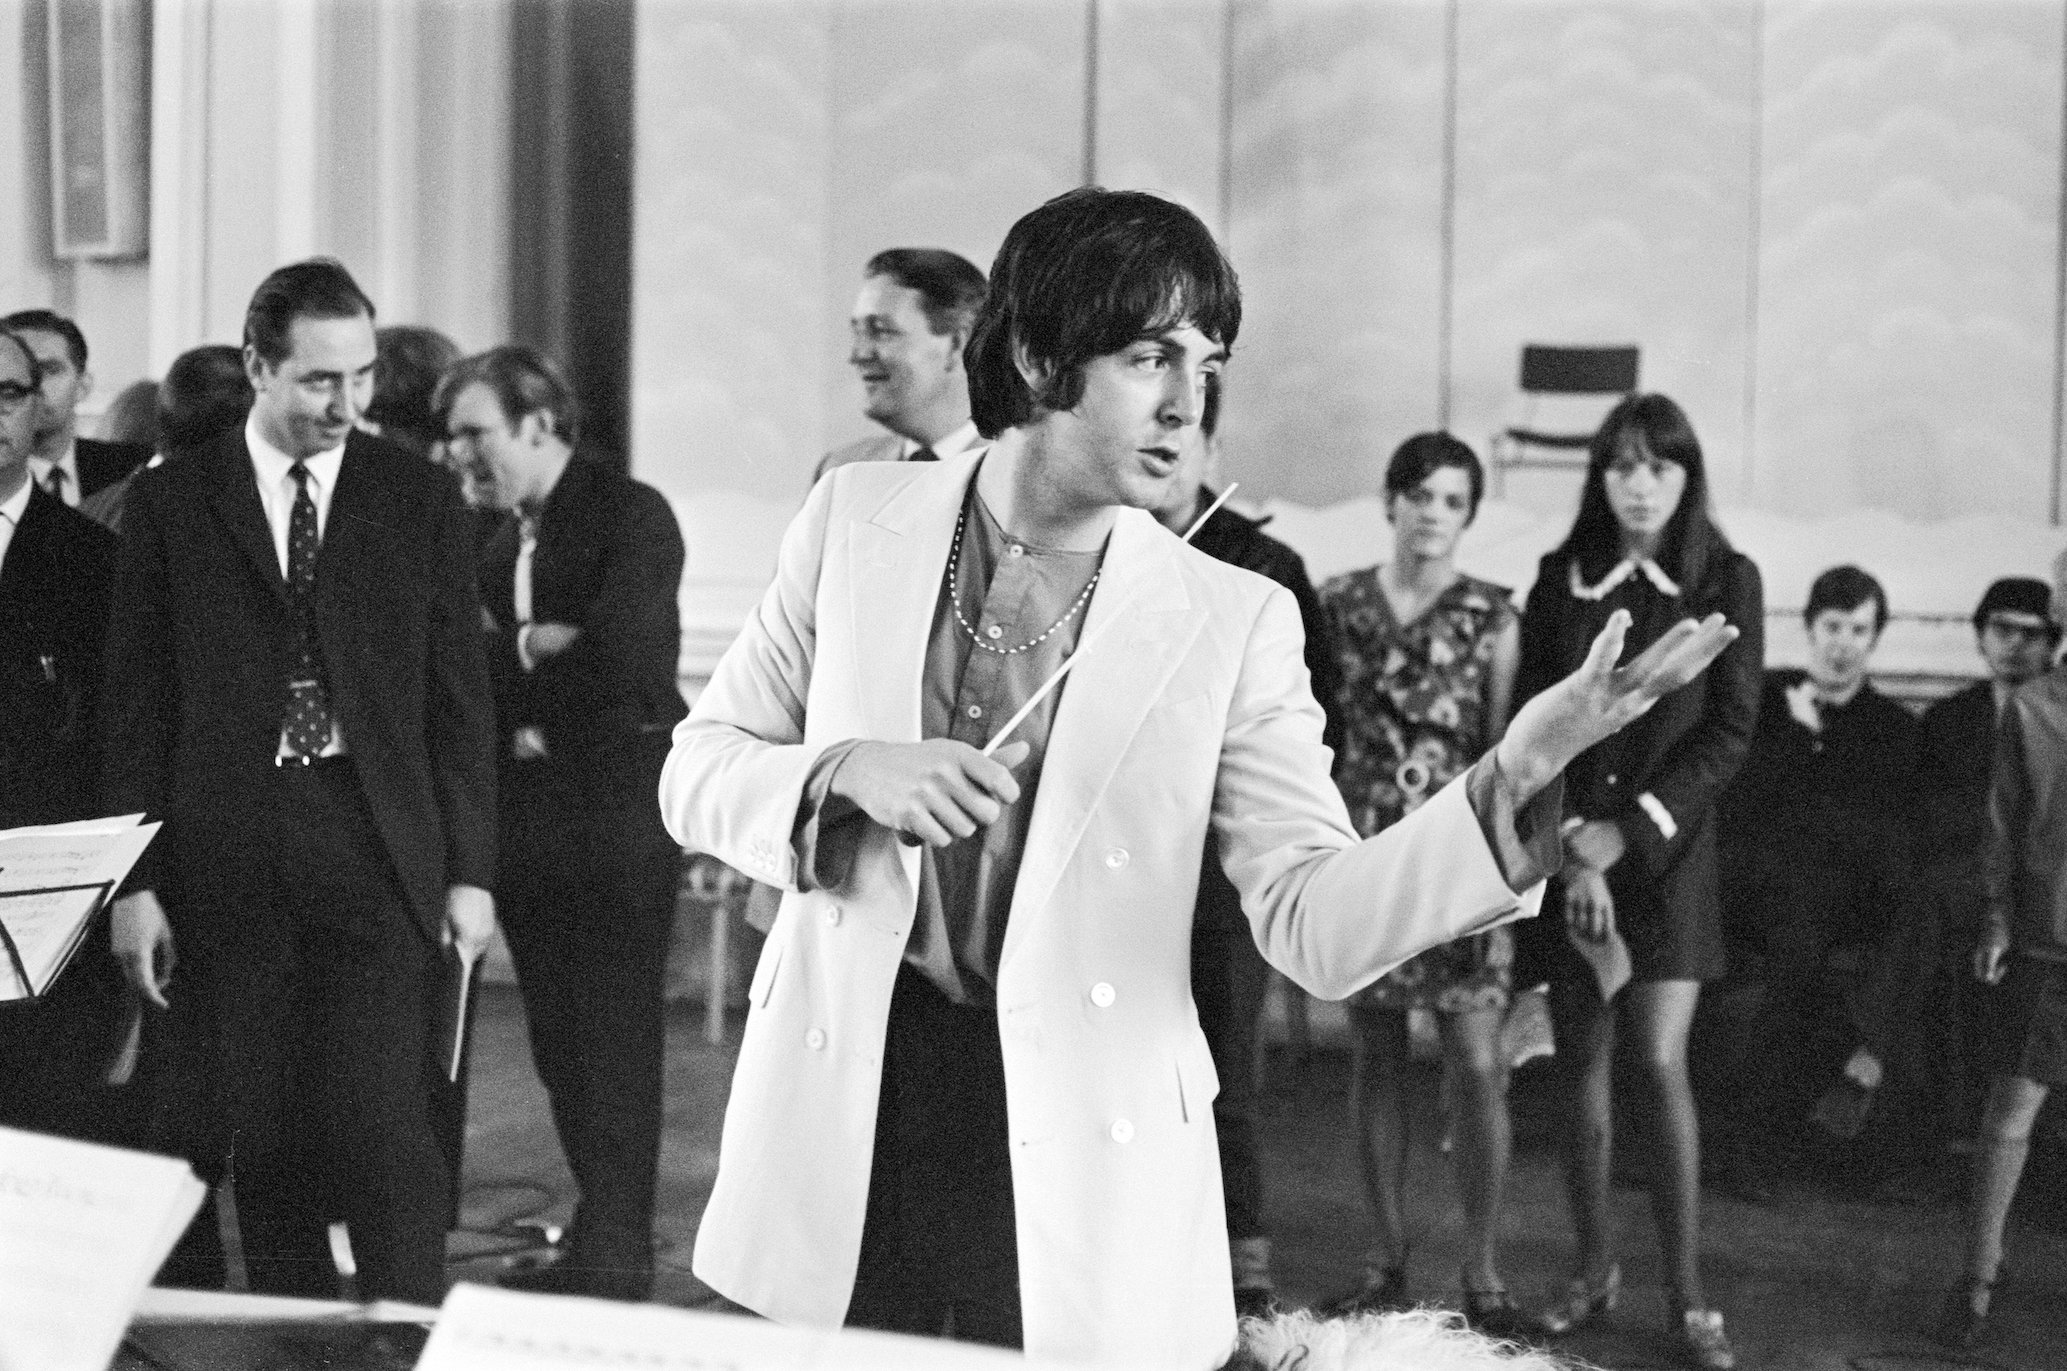 La canción de los Beatles que, según Paul McCartney, perfeccionó el 'Echo de Elvis'